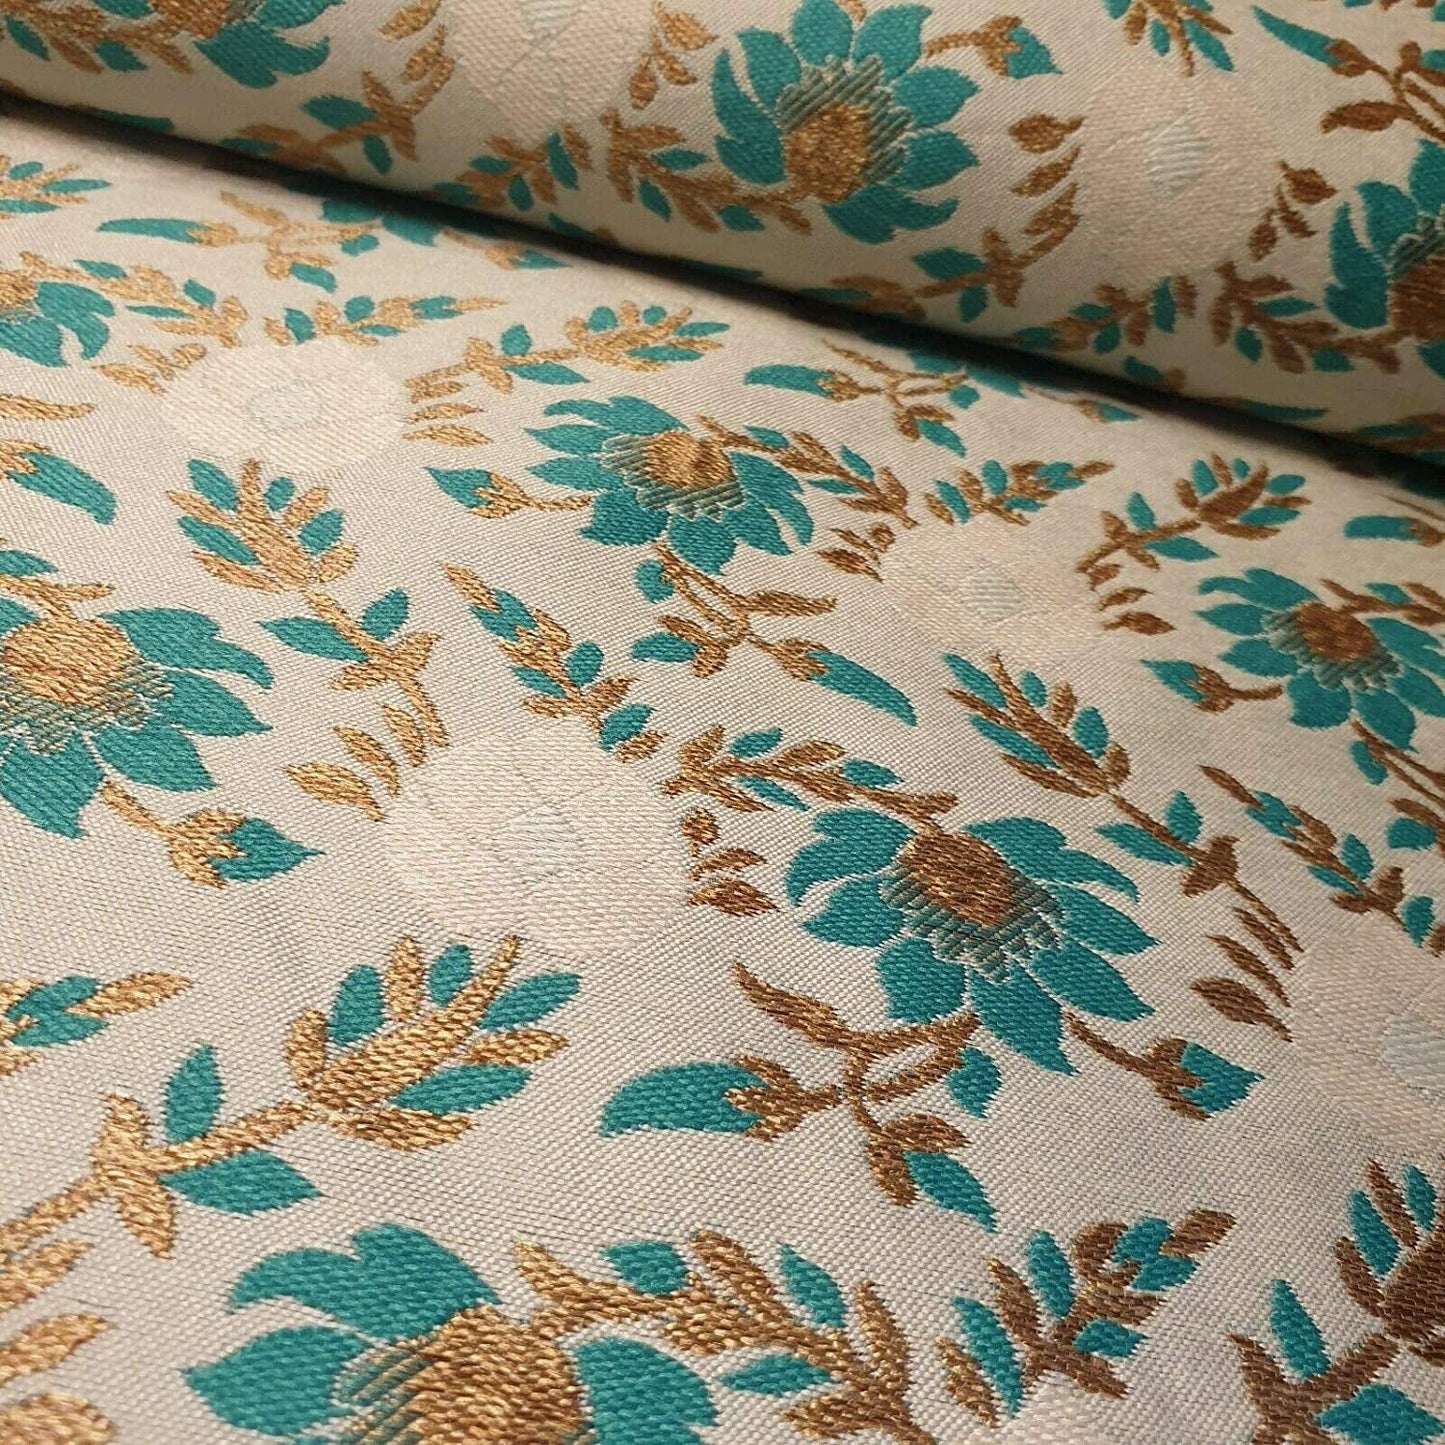 Indian Brocade Banarasi Jacquard Upholstery Craft Cushion Dress Fabric 44" (Beige Base with Turquoise Flowers)